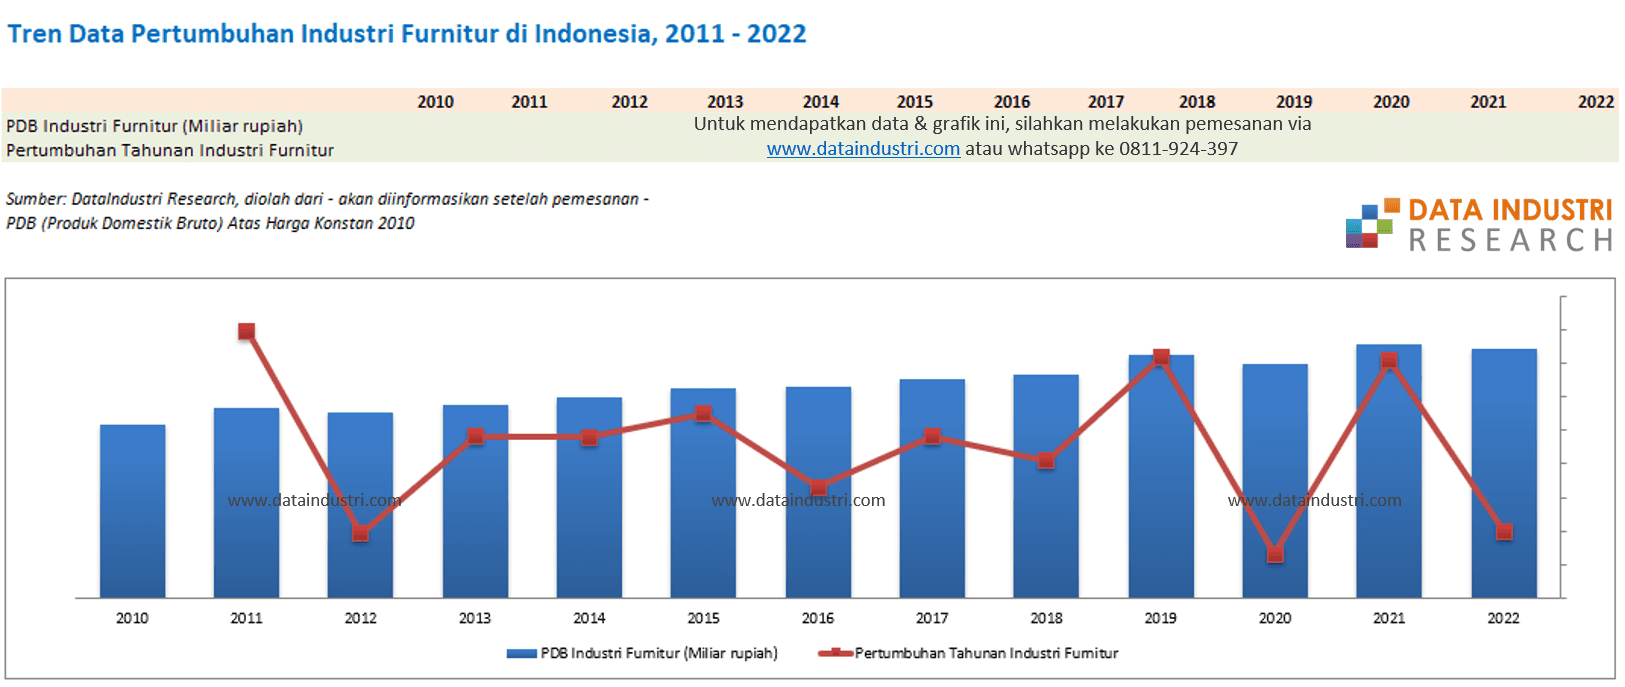 Tren Data Pertumbuhan Industri Furnitur di Indonesia, 2011 sampai 2022